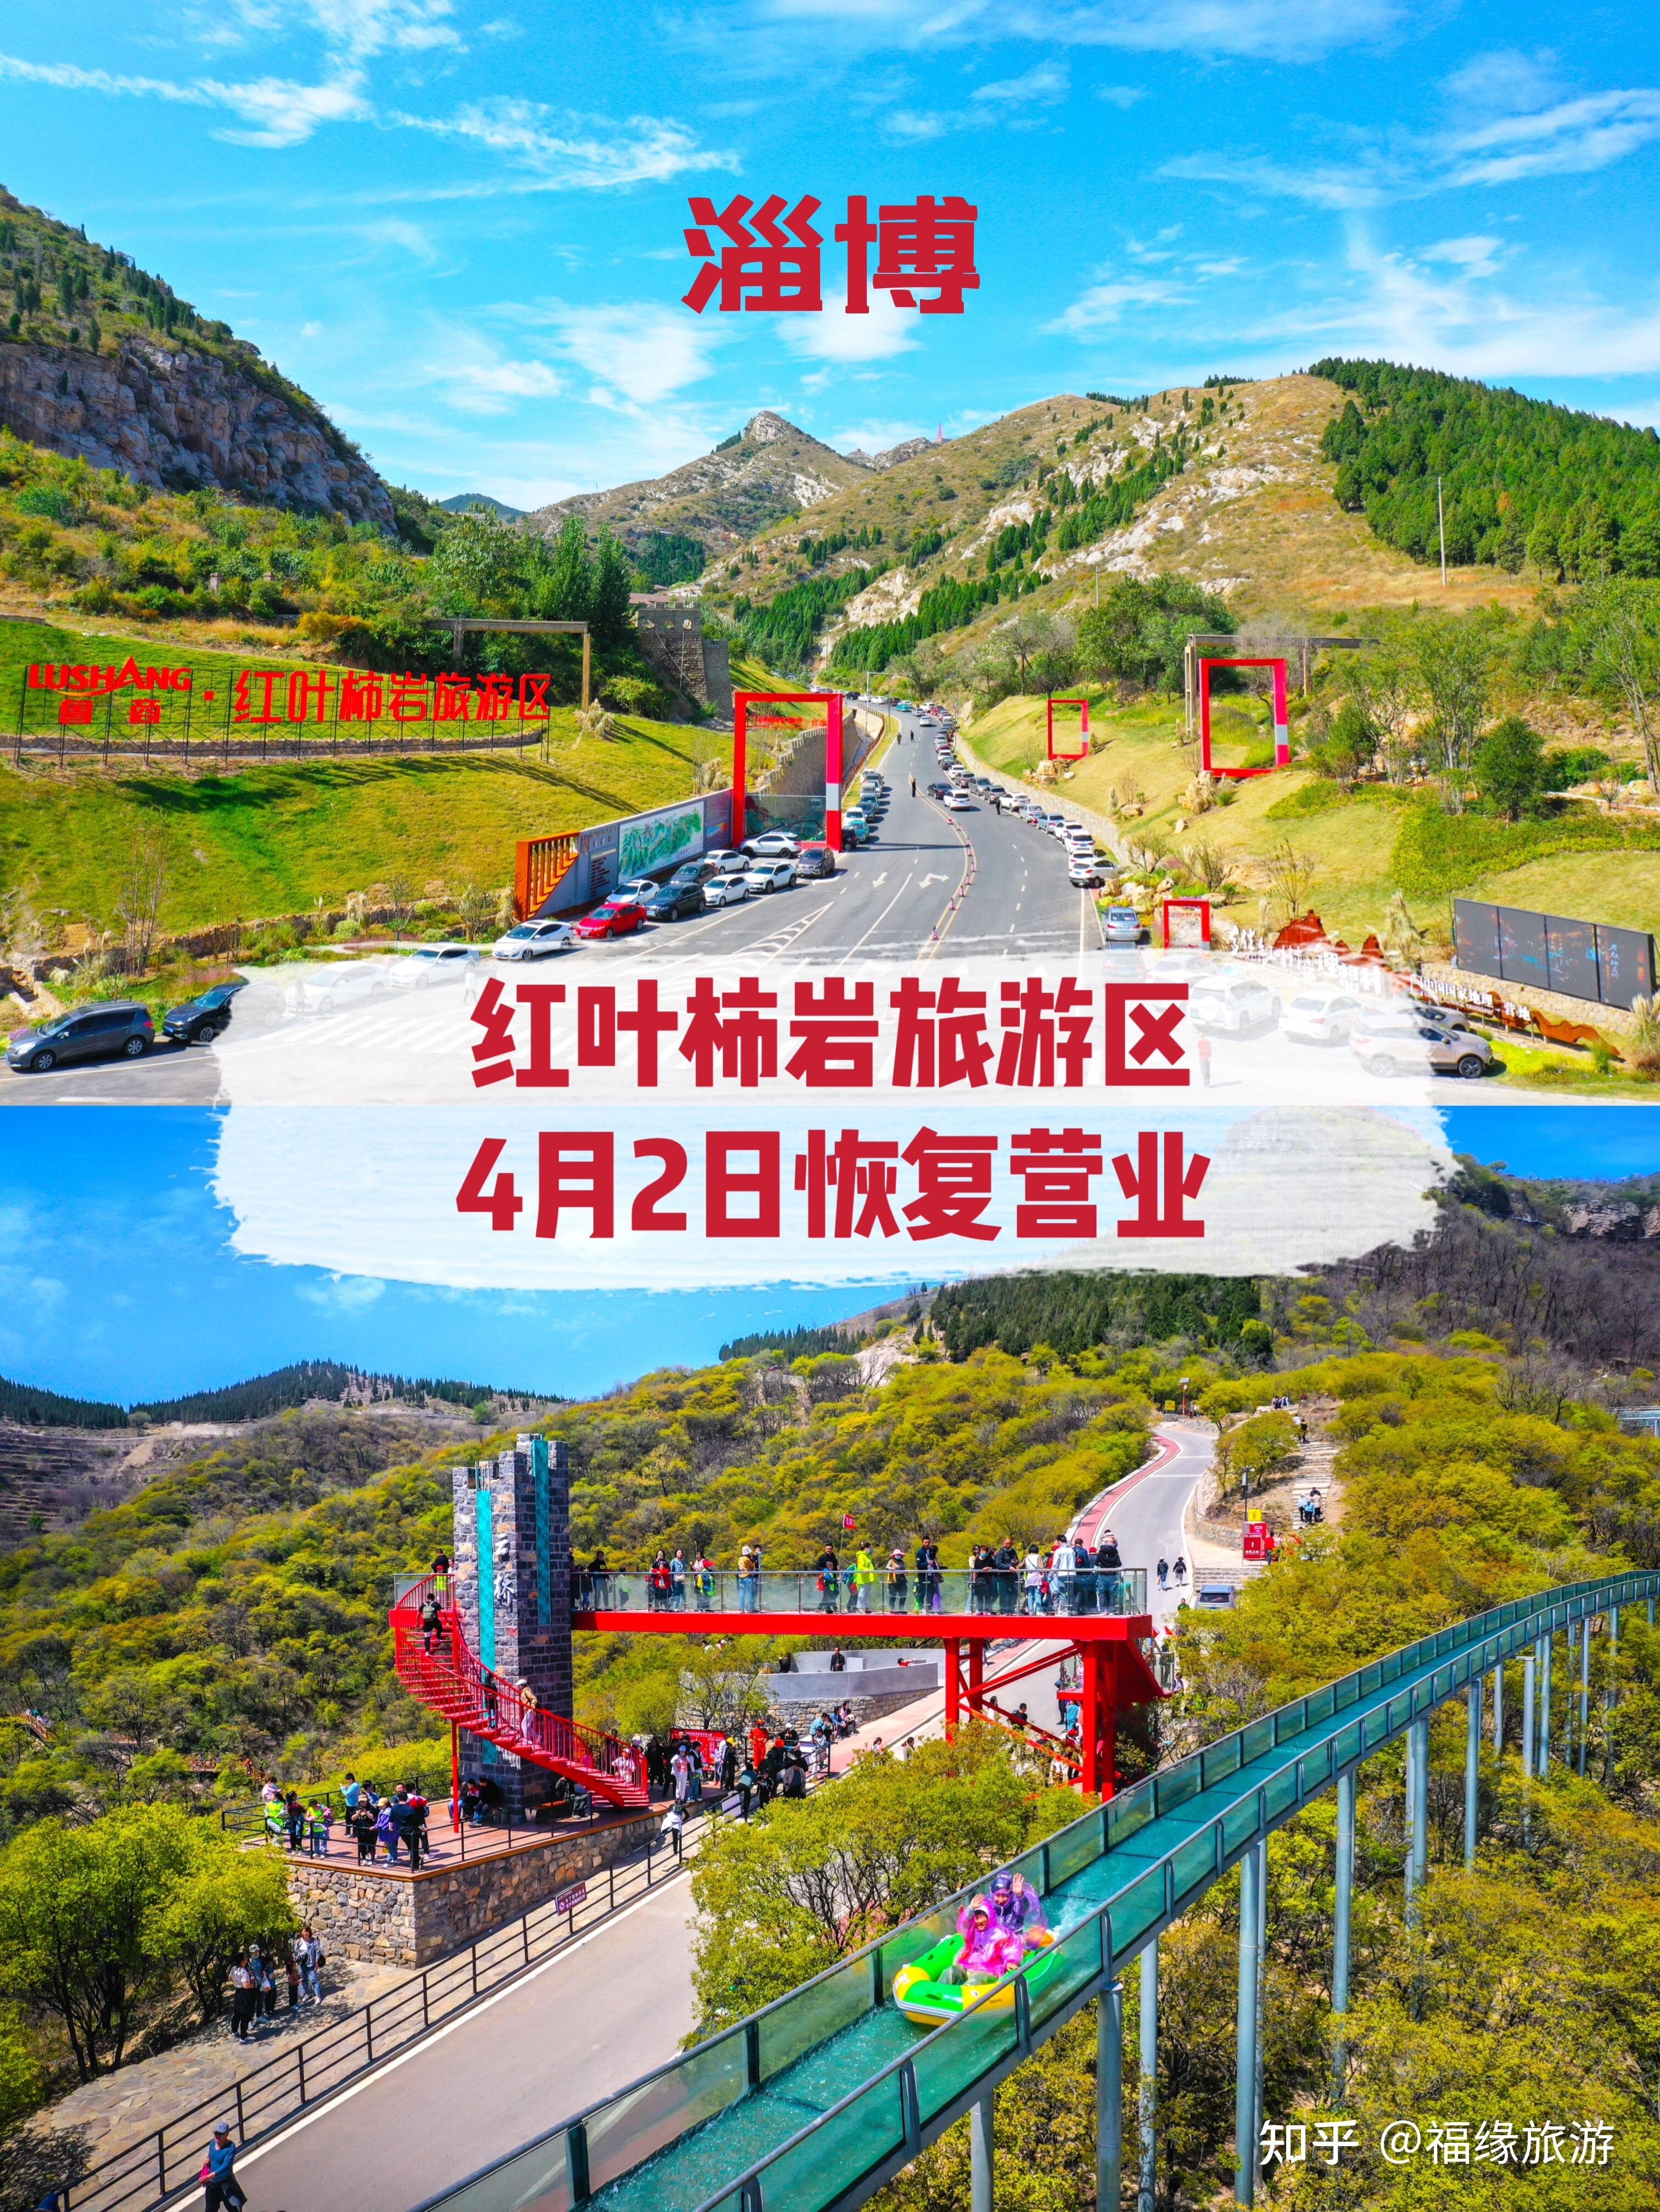 淄博红叶柿岩旅游区4月2日恢复营业!